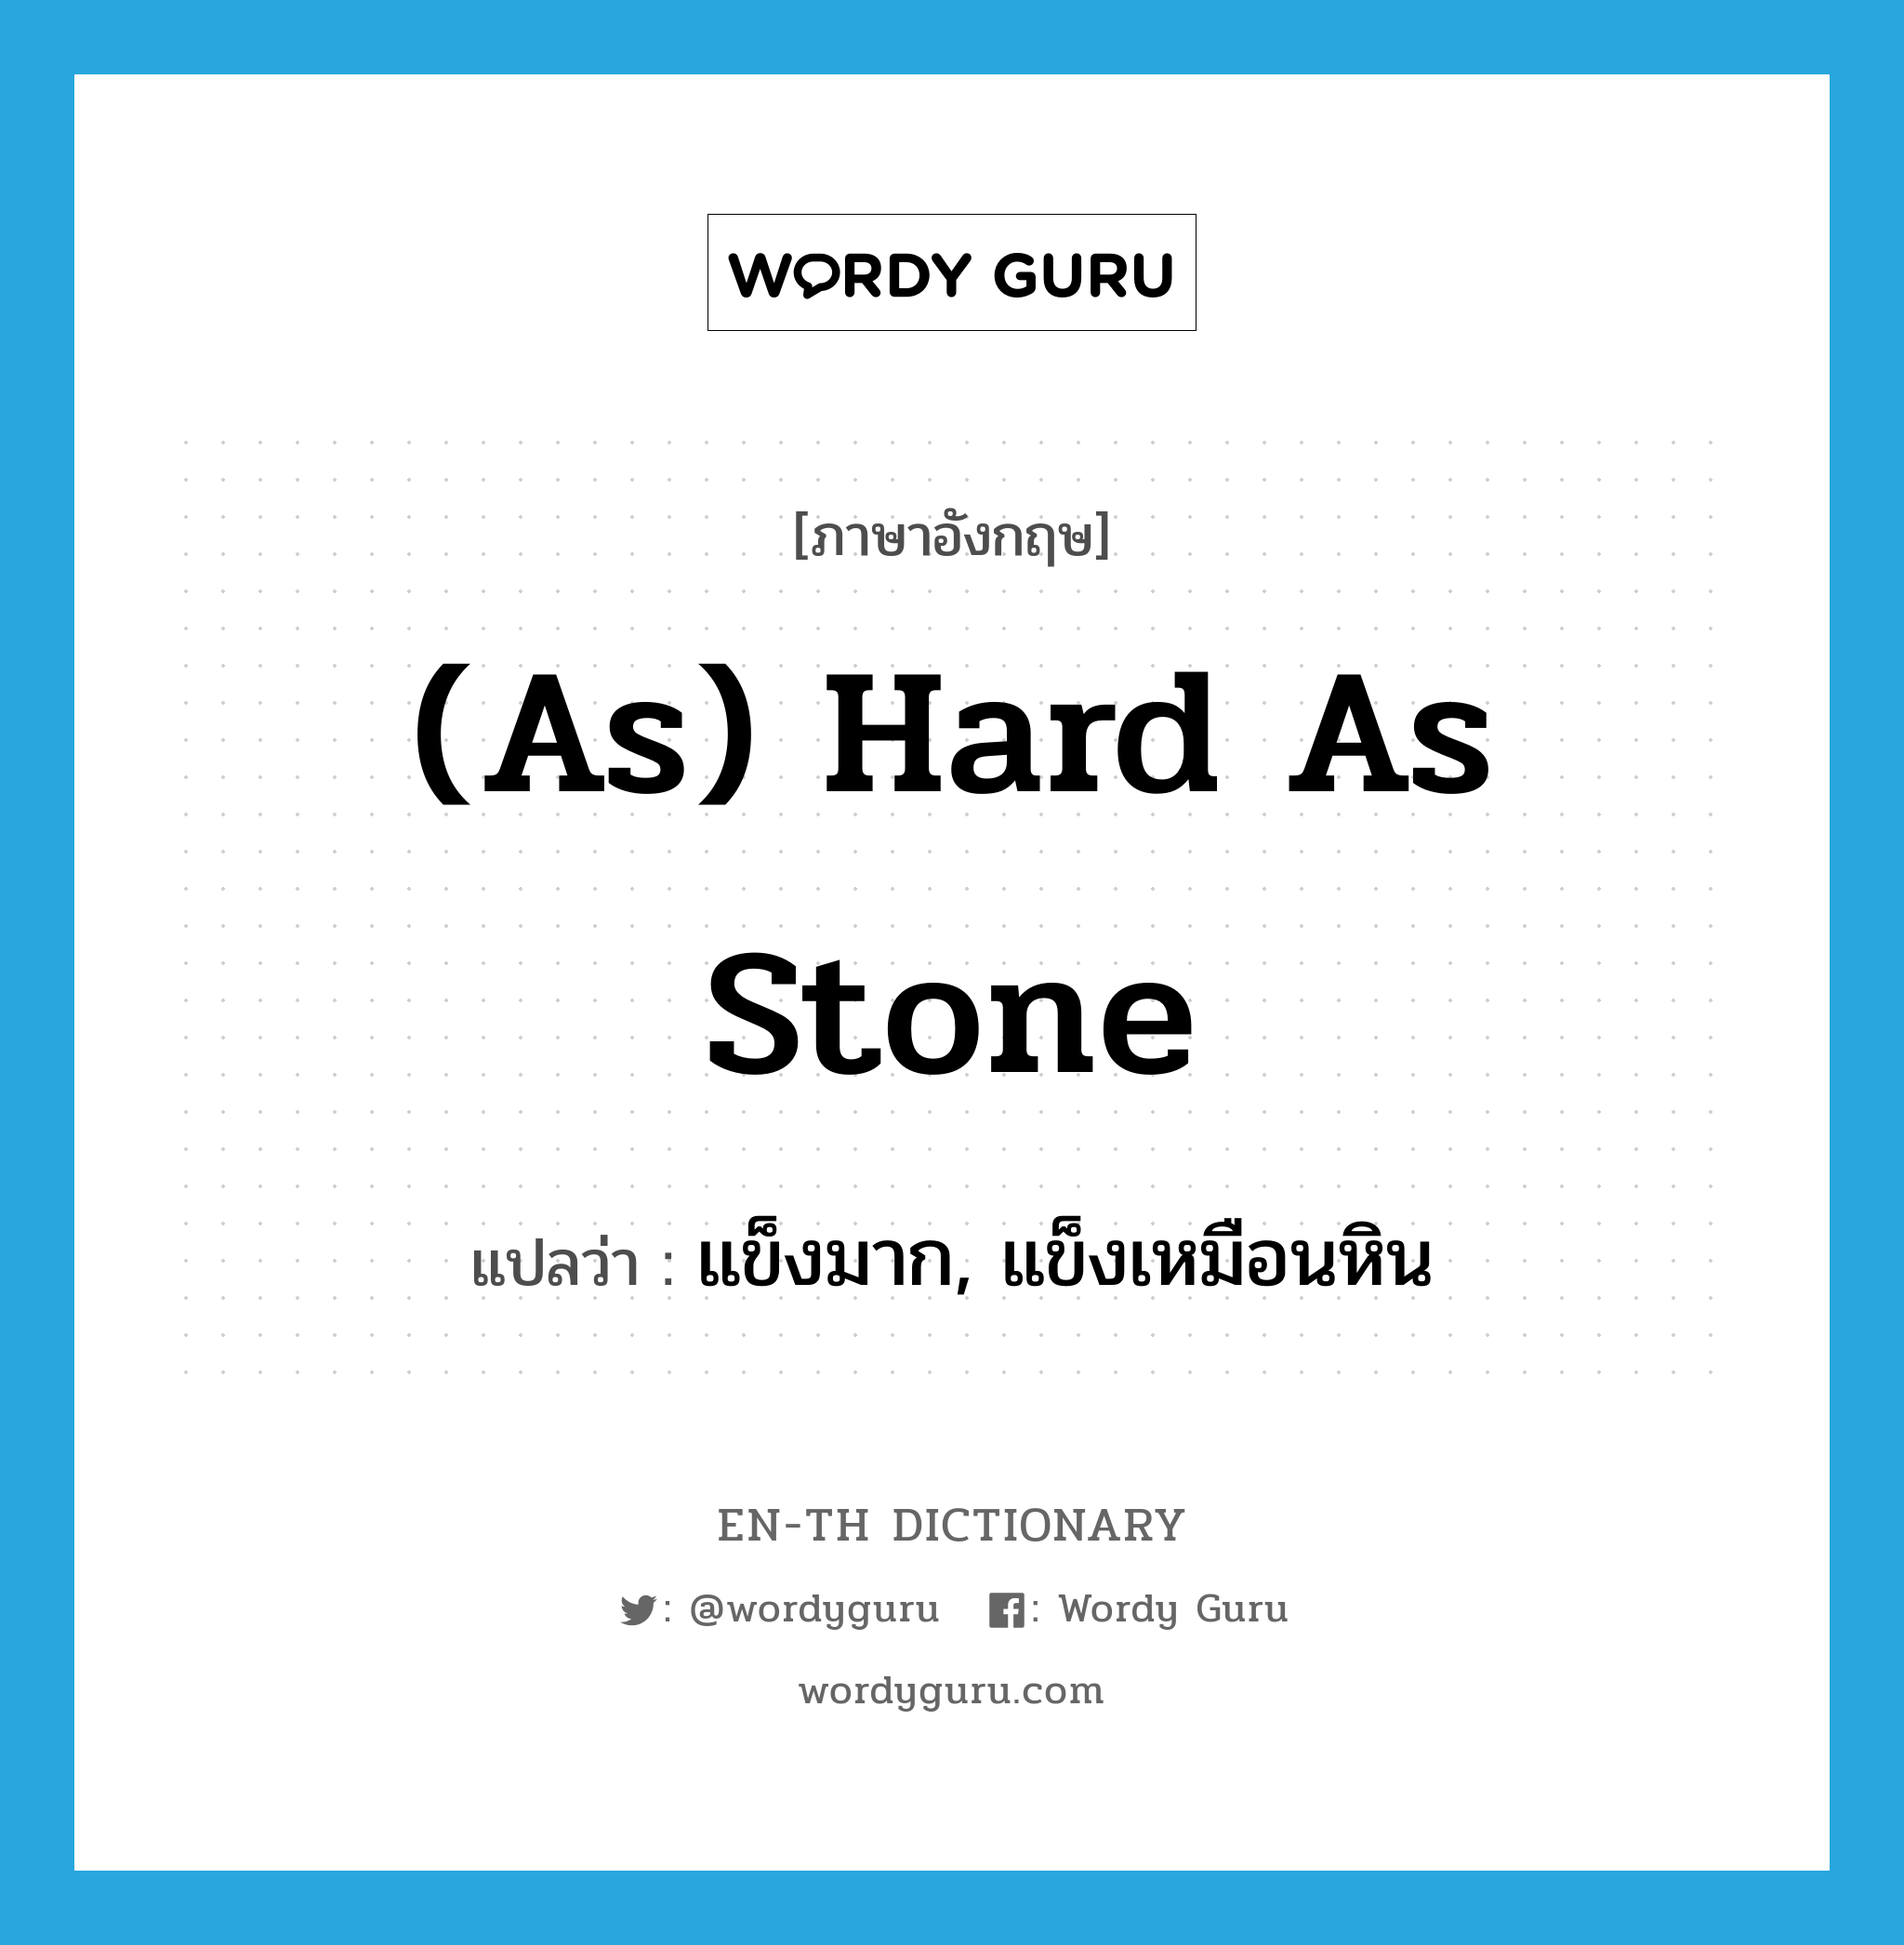 แข็งมาก, แข็งเหมือนหิน ภาษาอังกฤษ?, คำศัพท์ภาษาอังกฤษ แข็งมาก, แข็งเหมือนหิน แปลว่า (as) hard as stone ประเภท IDM หมวด IDM